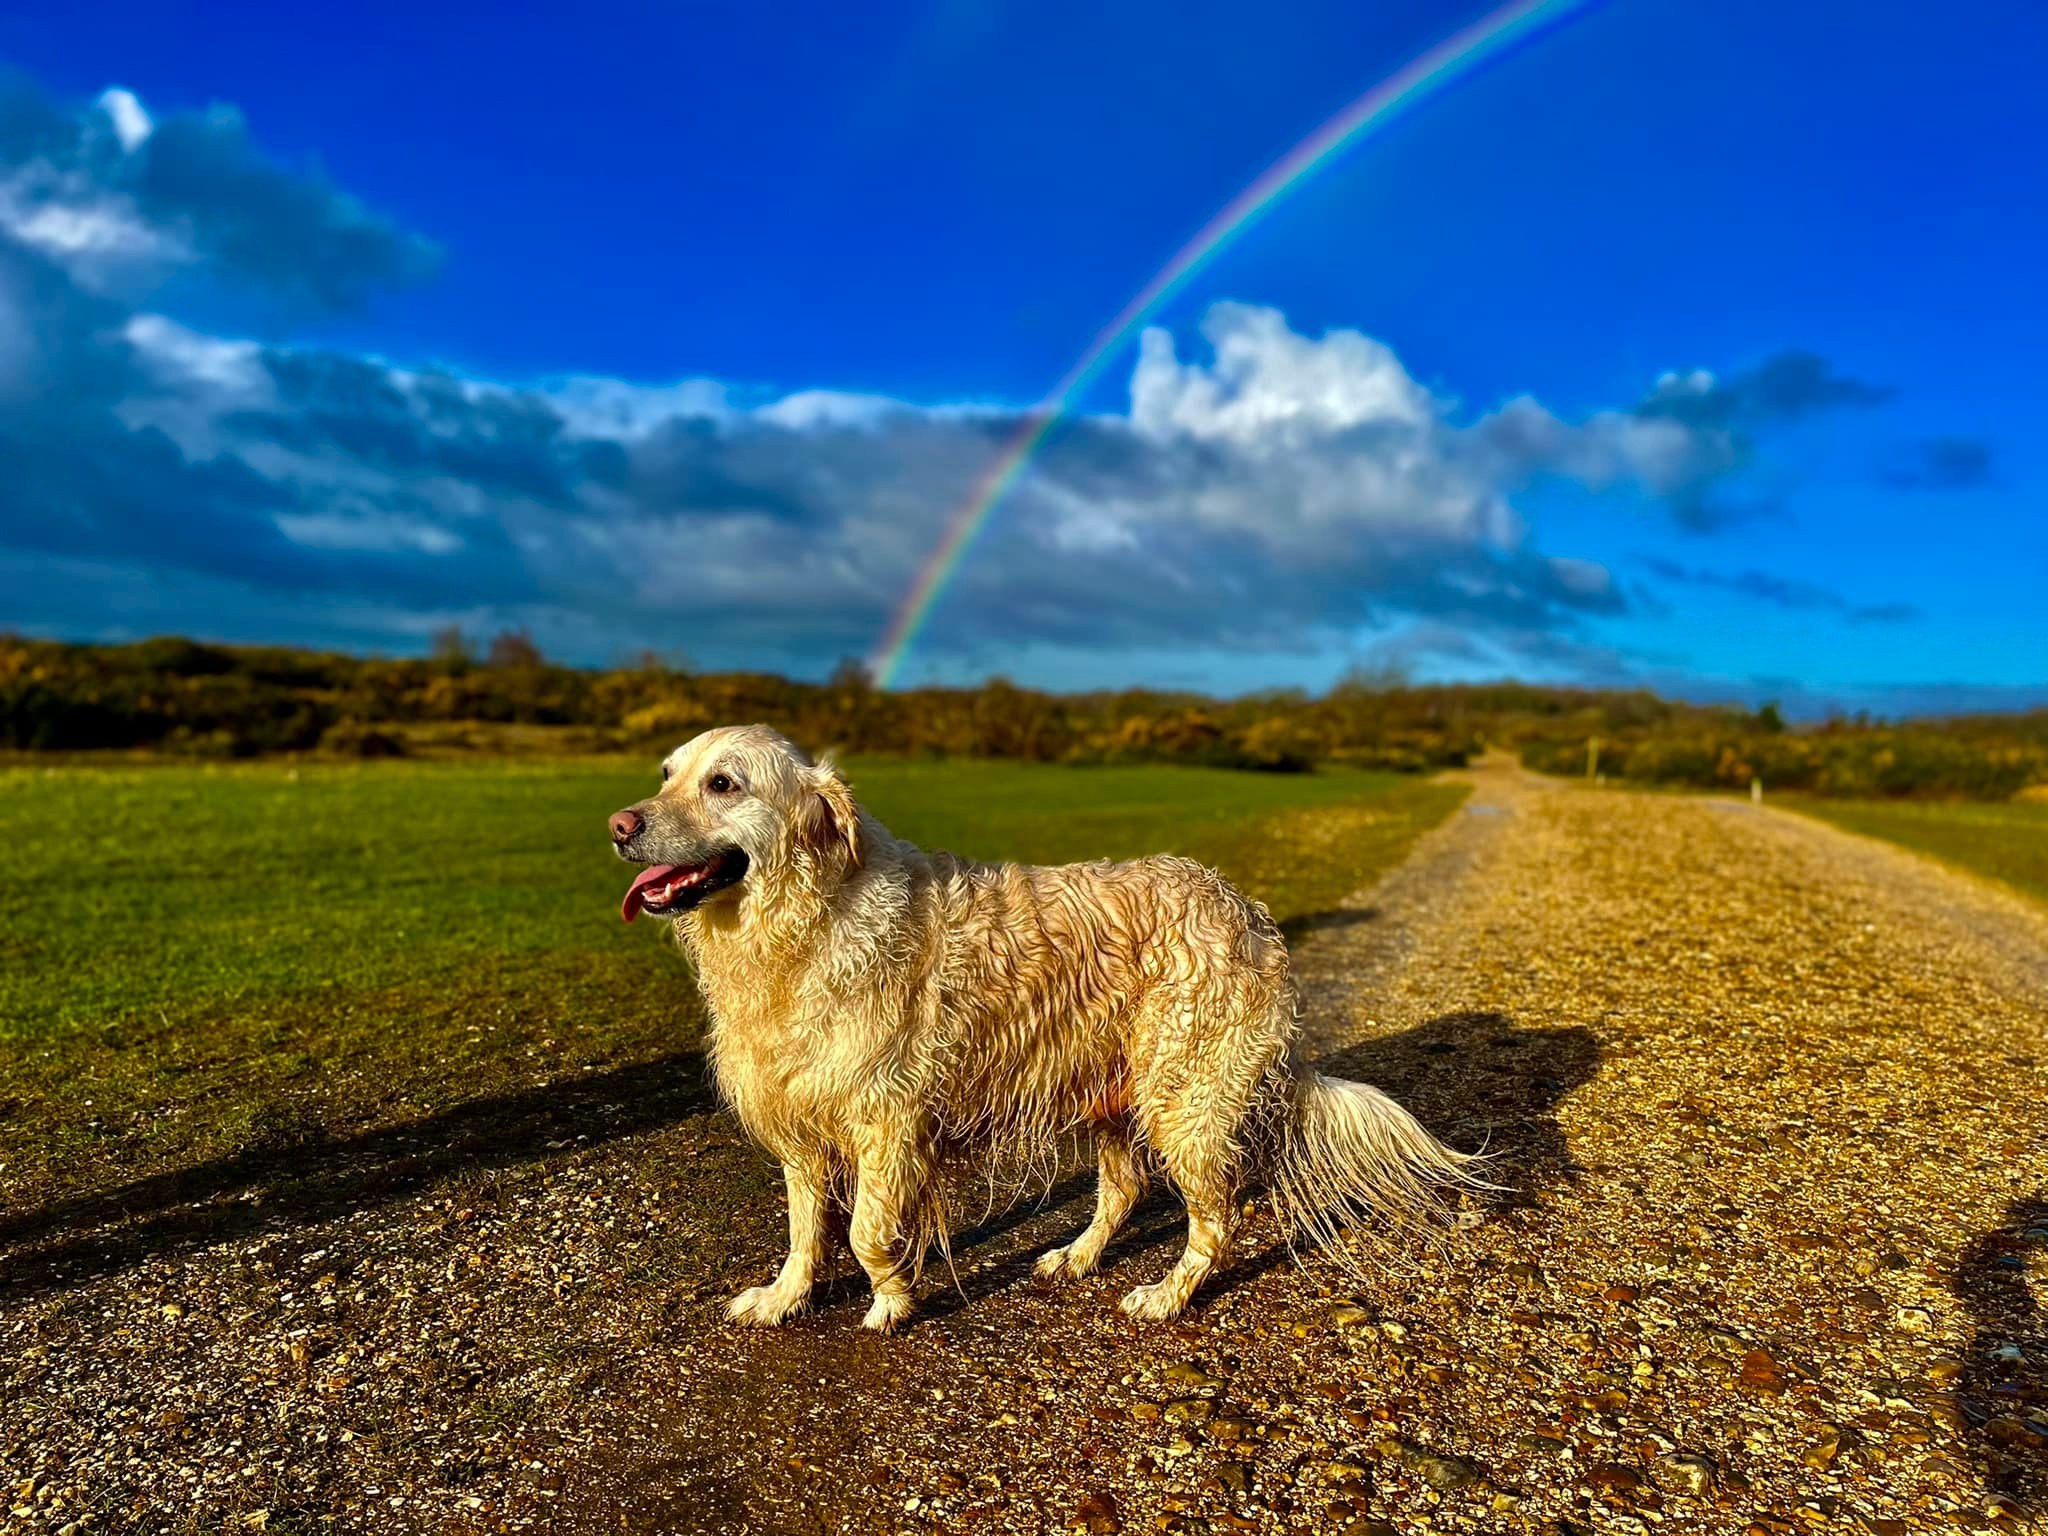 Somewhere over the rainbow... (Tony McGinn)